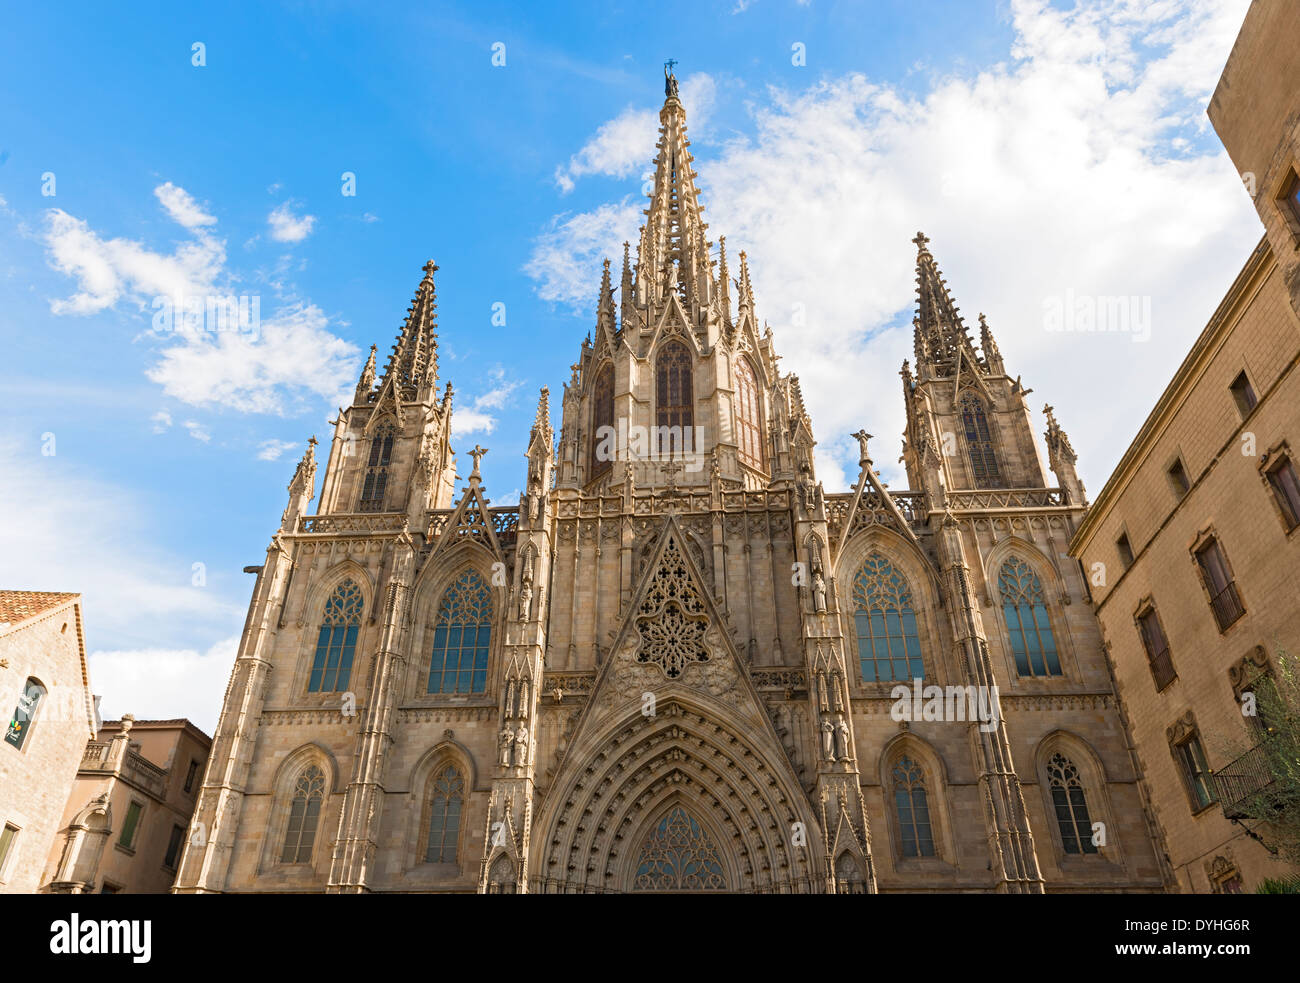 Façade de la cathédrale de Barcelone, Espagne détails. La cathédrale se trouve au cœur de Barri Gotic (Quartier Gothique de Barcelone) Banque D'Images